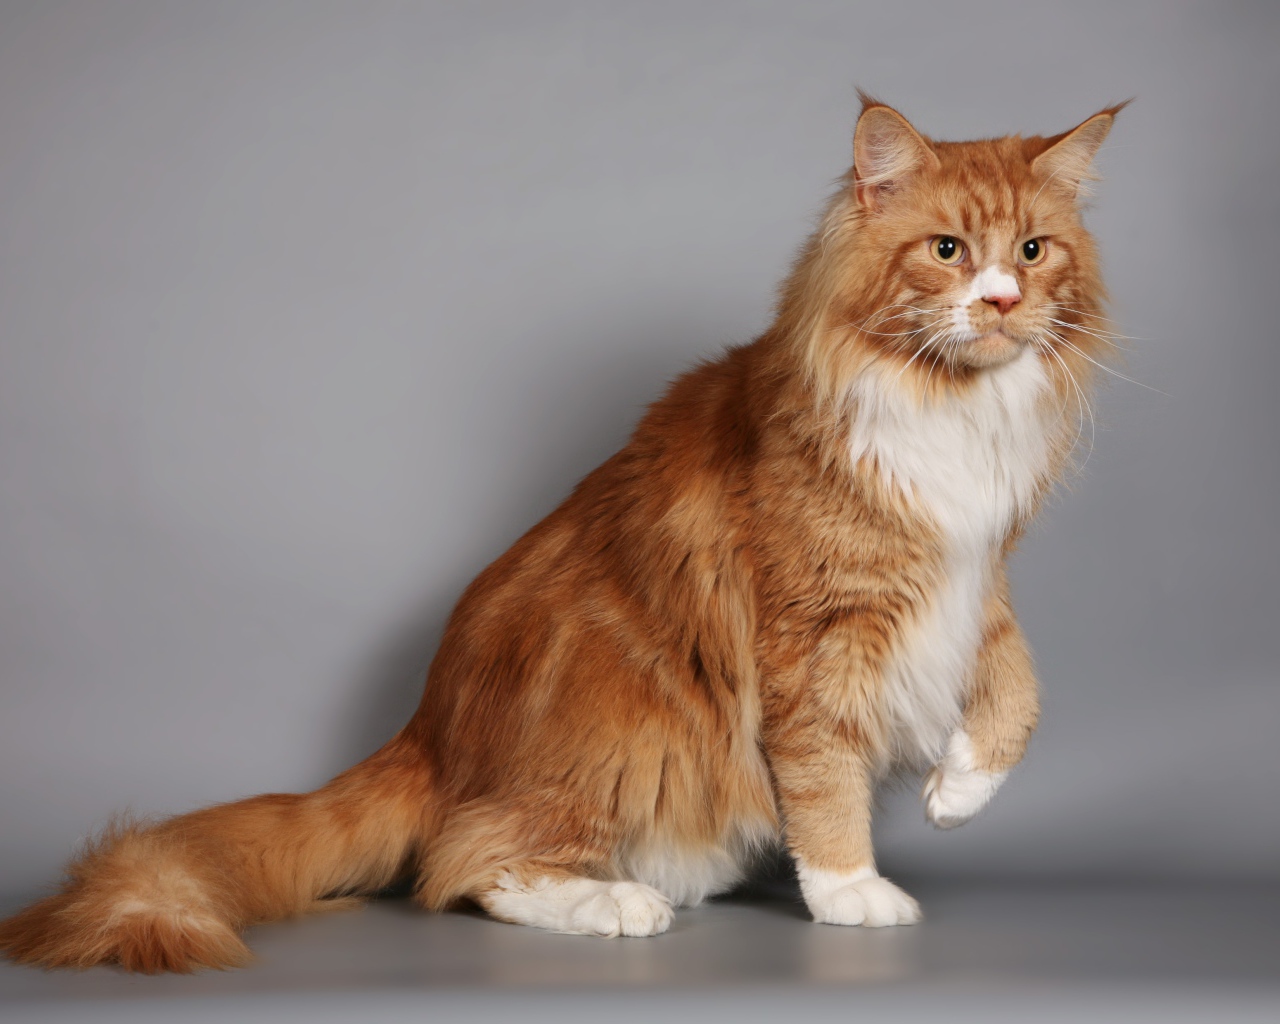 Красивый рыжий кот мейн-кун с белой грудкой